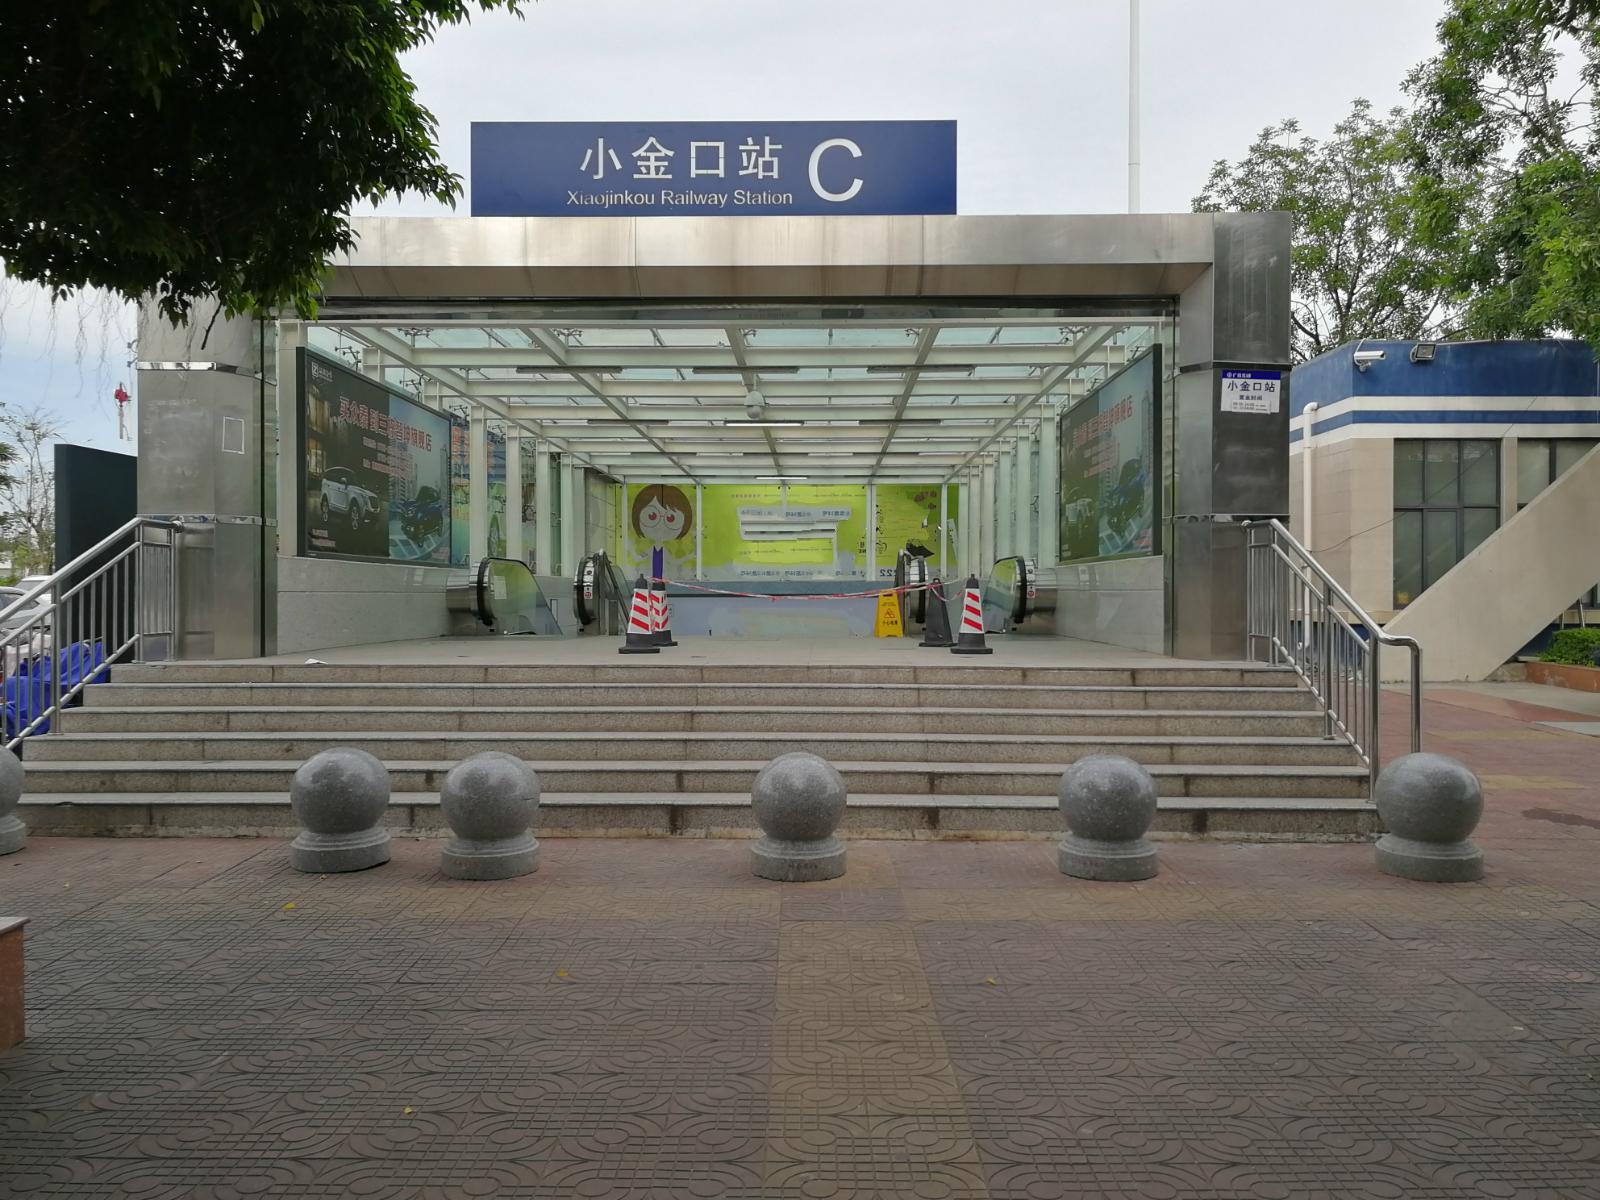 惠州火车站或将启动改扩建工程 将增电梯和自动扶递-惠州权威房产网-惠民之家